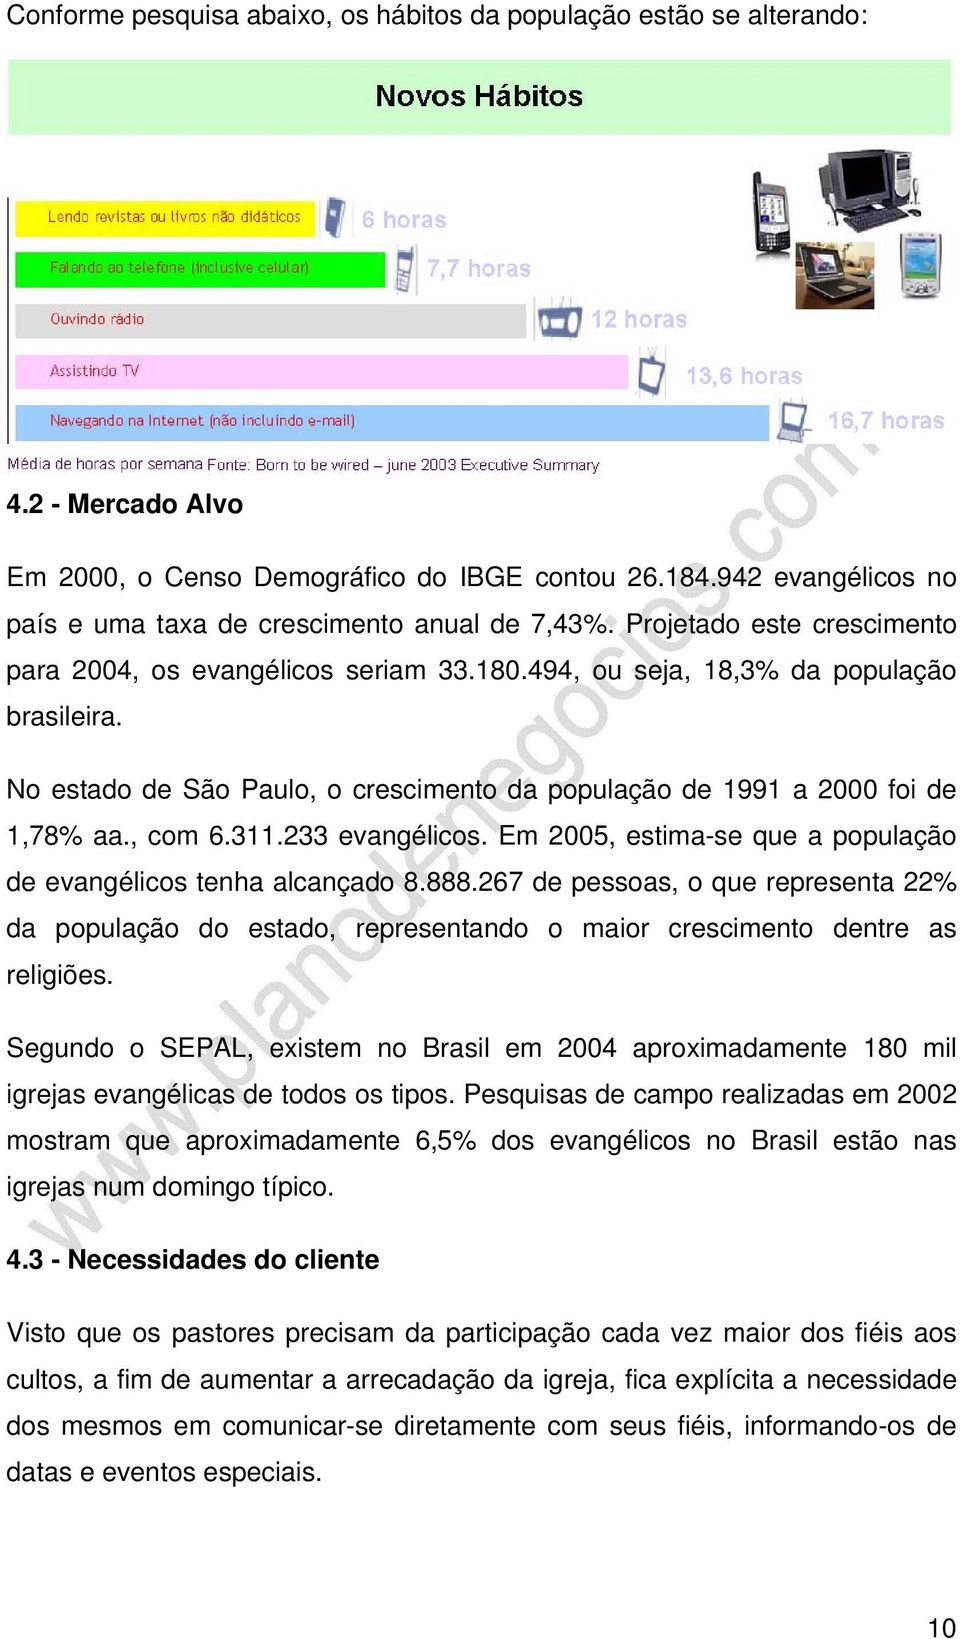 No estado de São Paulo, o crescimento da população de 1991 a 2000 foi de 1,78% aa., com 6.311.233 evangélicos. Em 2005, estima-se que a população de evangélicos tenha alcançado 8.888.